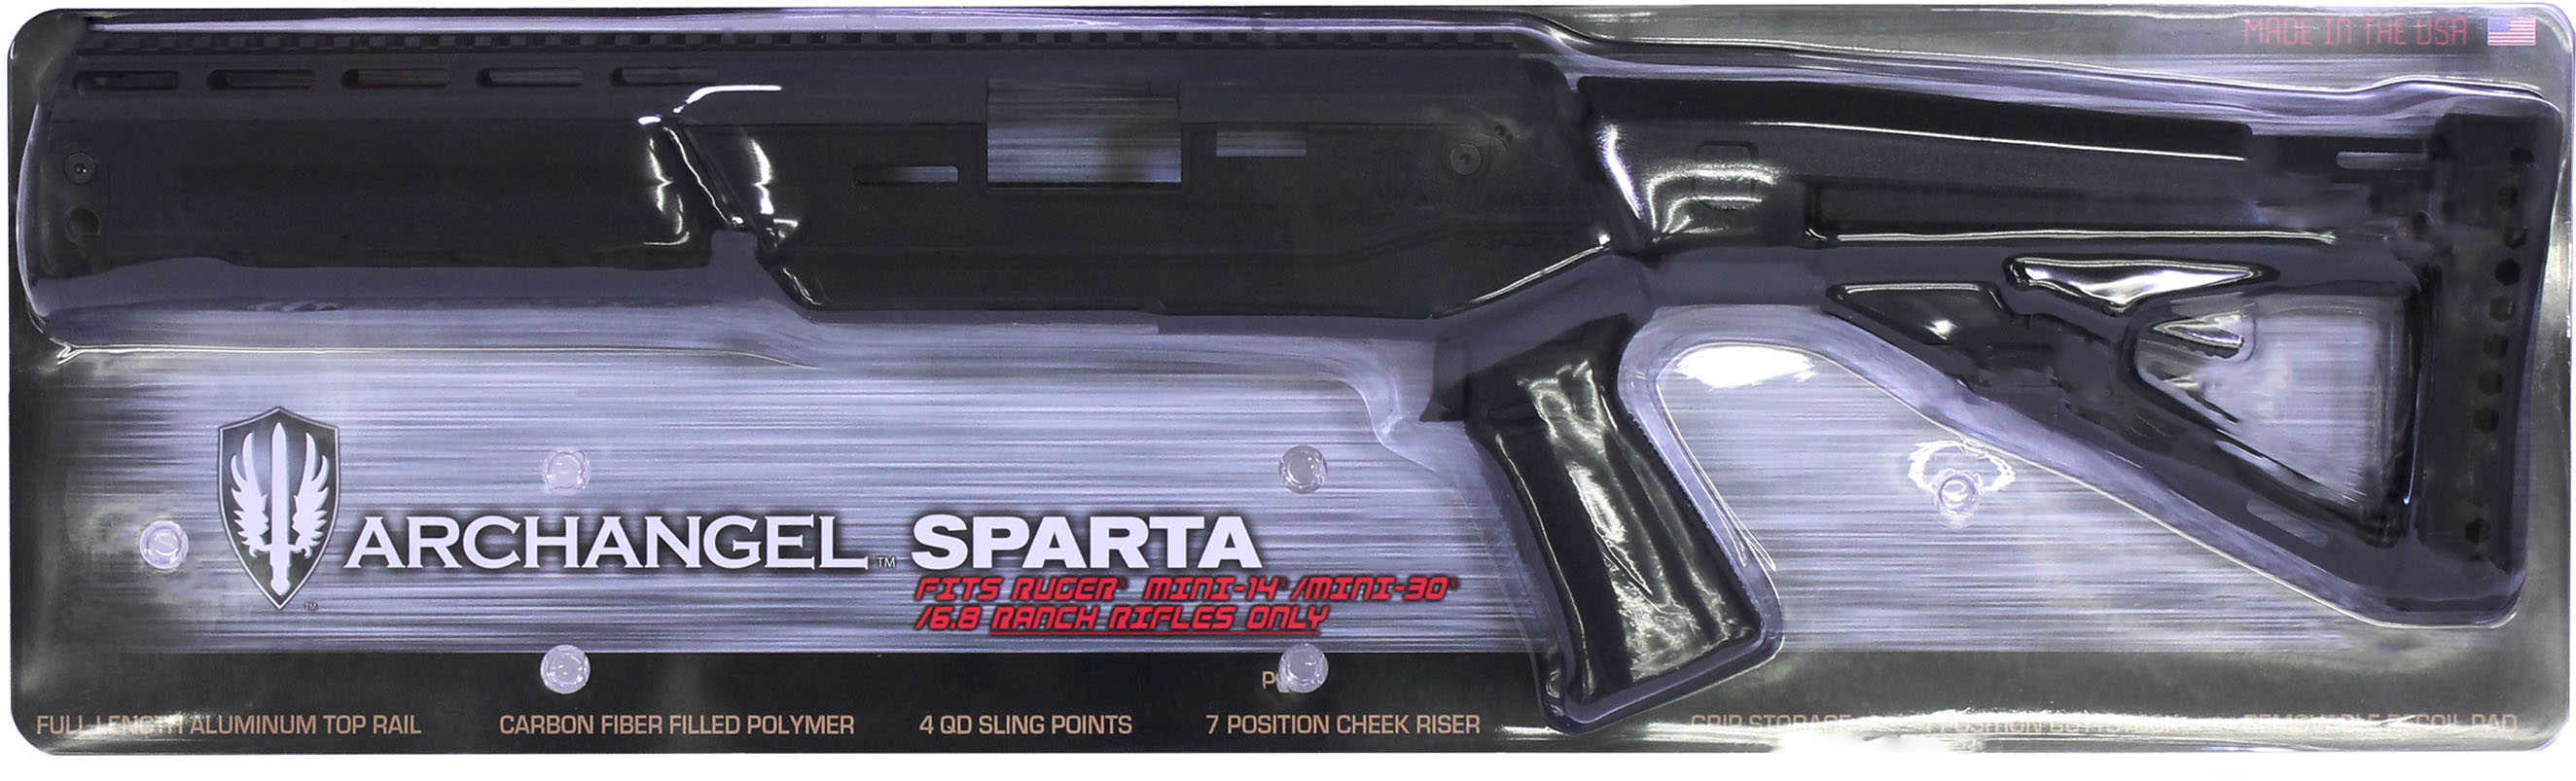 Ruger Mini-14 Archangel Sparta Stock Adjustable